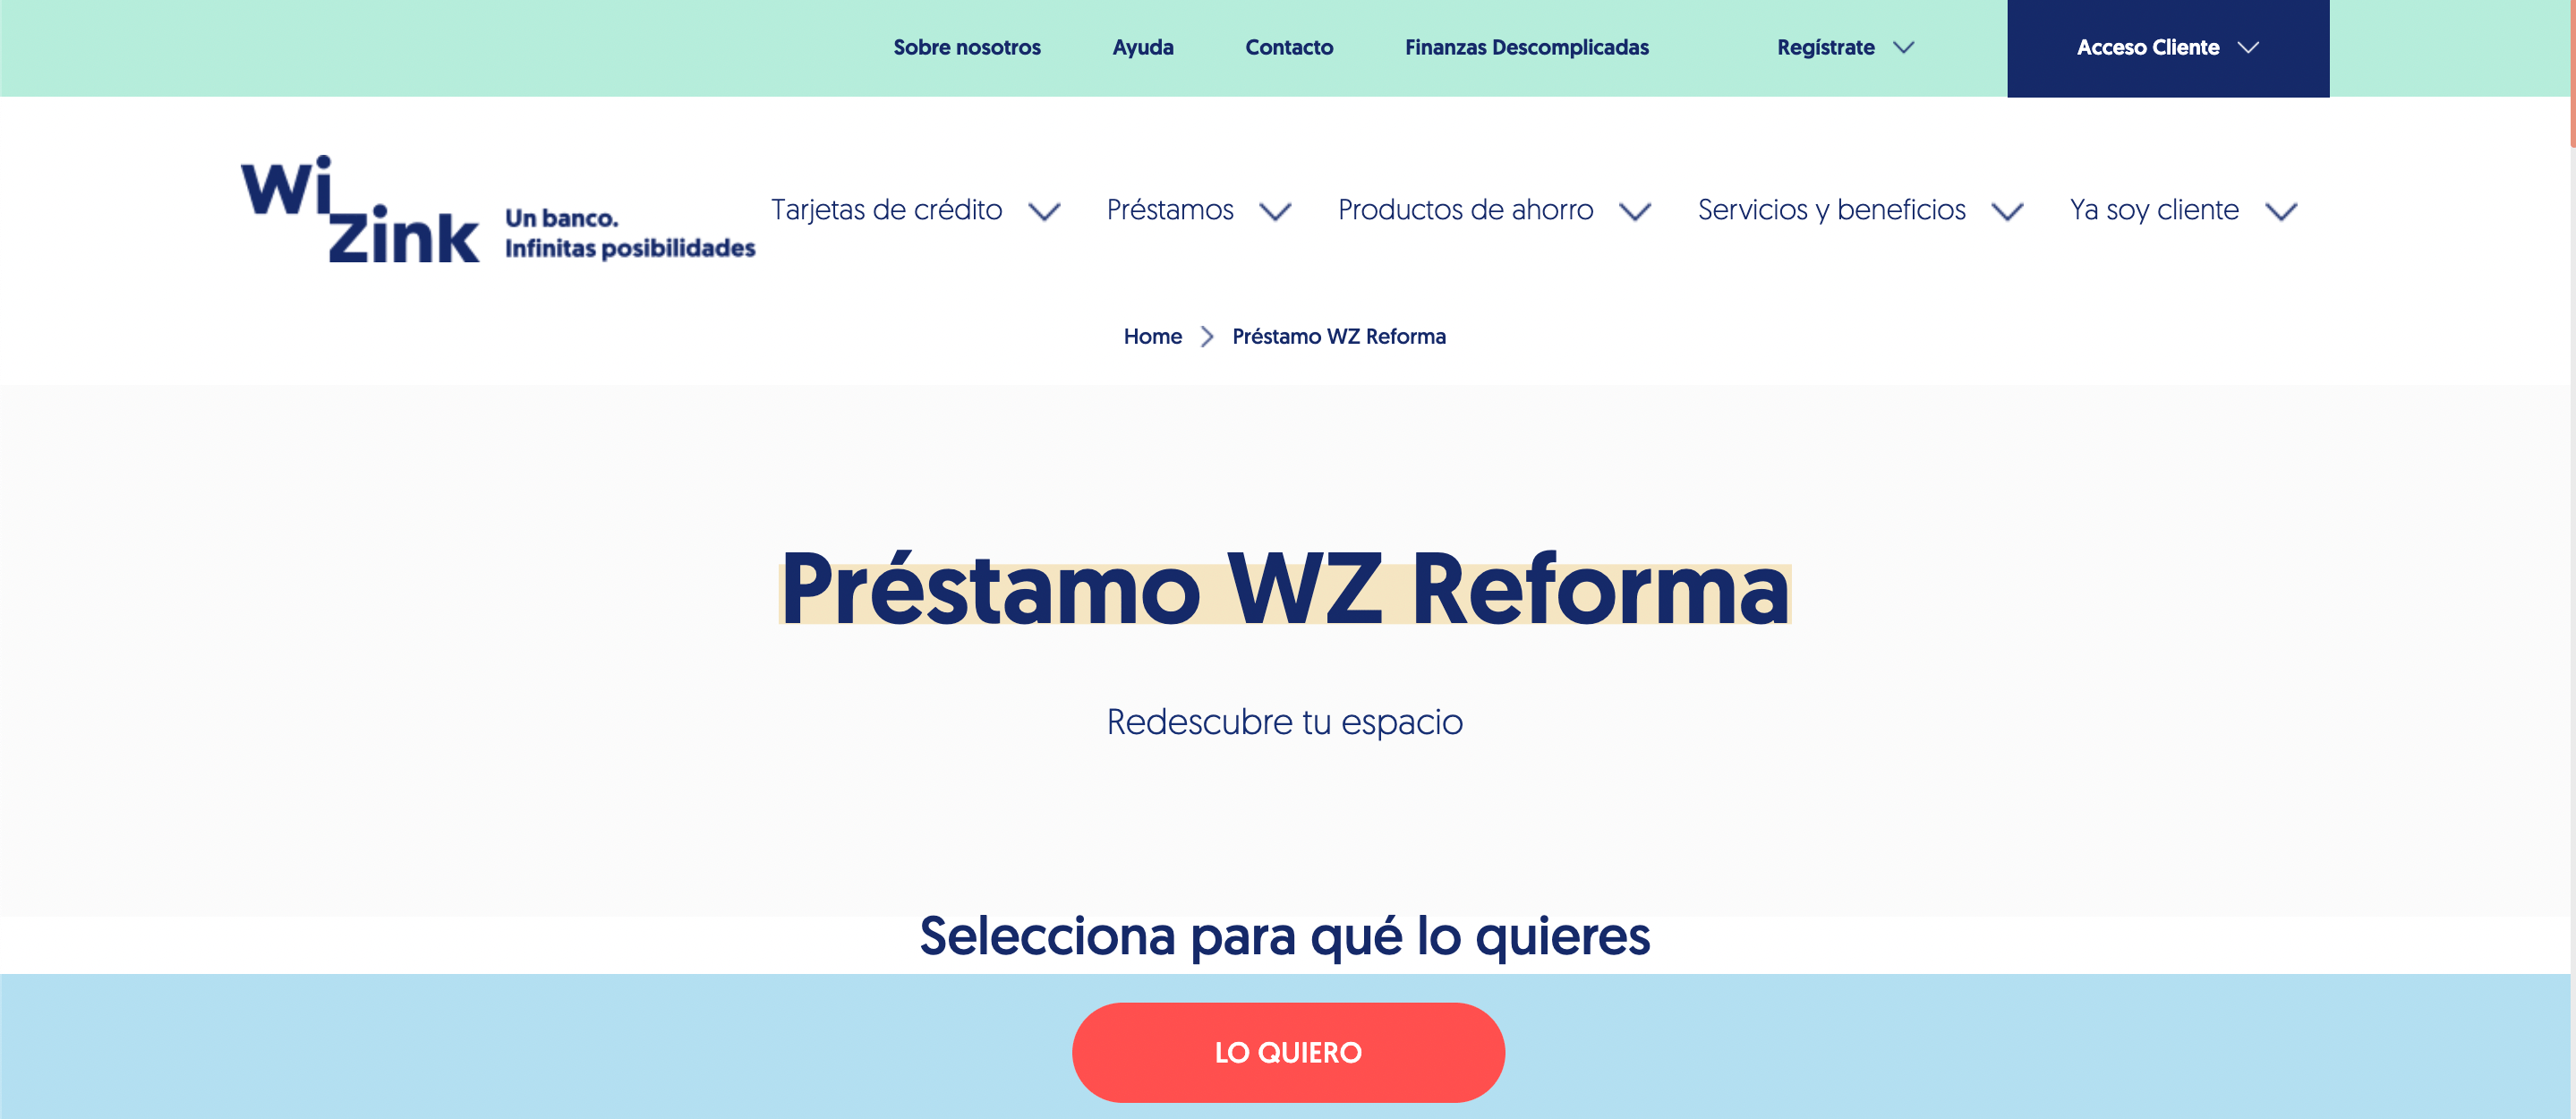 Wizink Préstamo WZ Reforma hasta 30 000 €